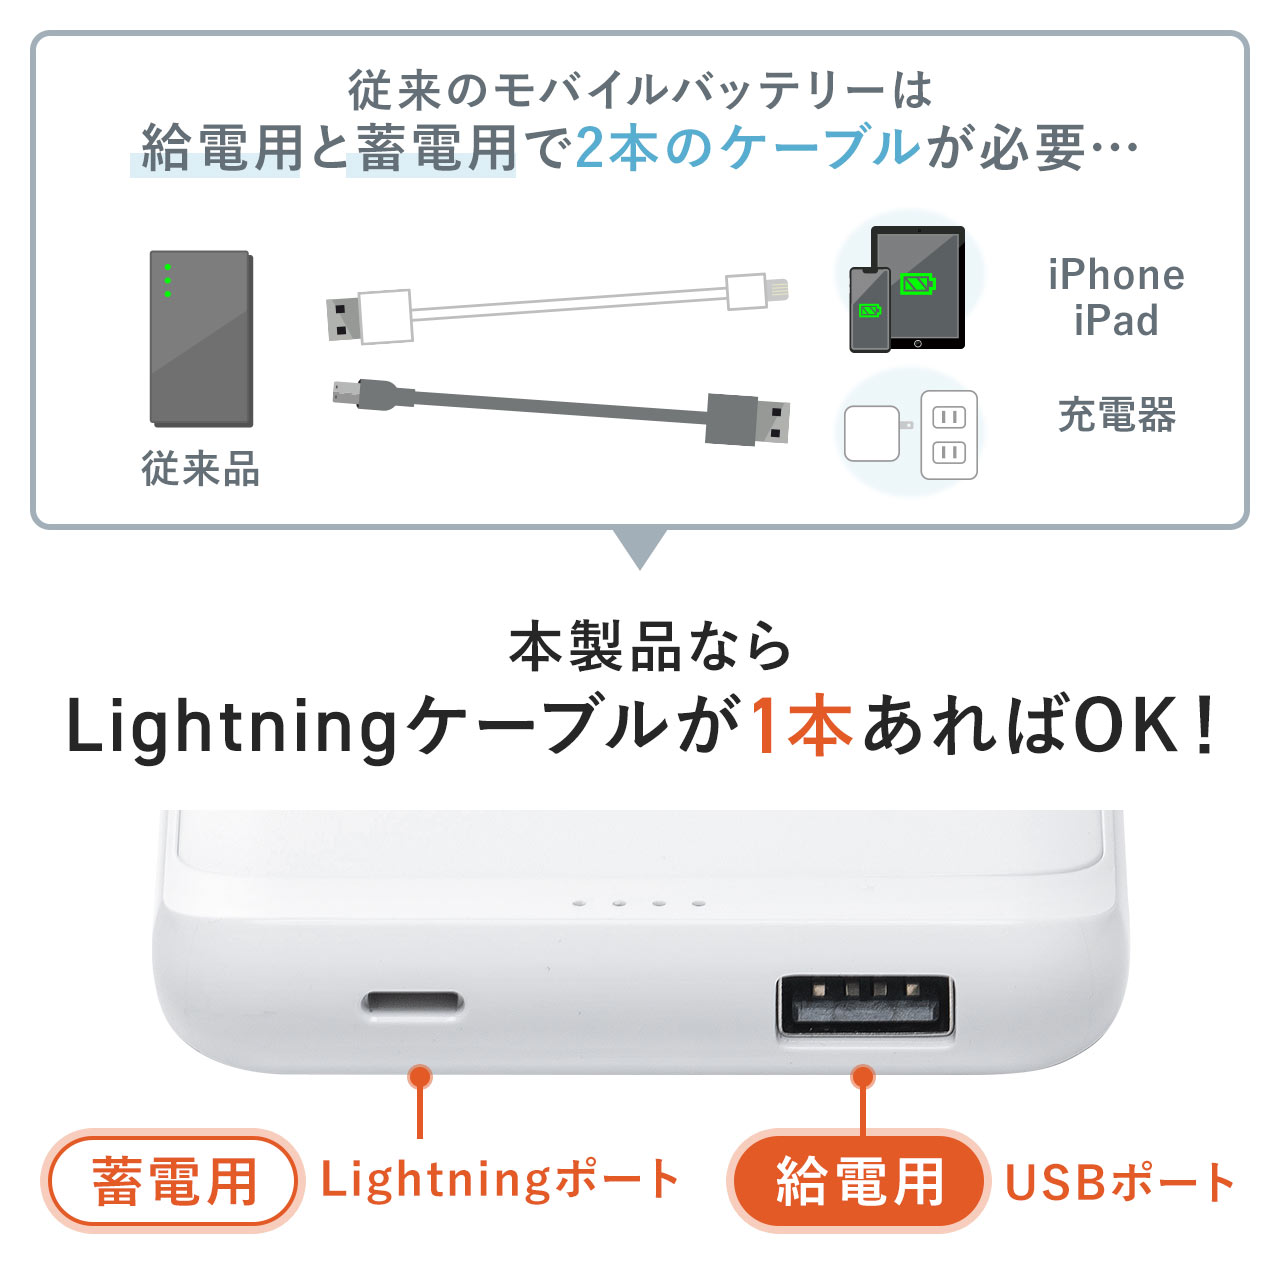 Lightningケーブルで充電可能なモバイルバッテリー+巻取りLightningケーブルのセット 700-BTL048W+500-IPLMM020K 702-BTL048WSET2